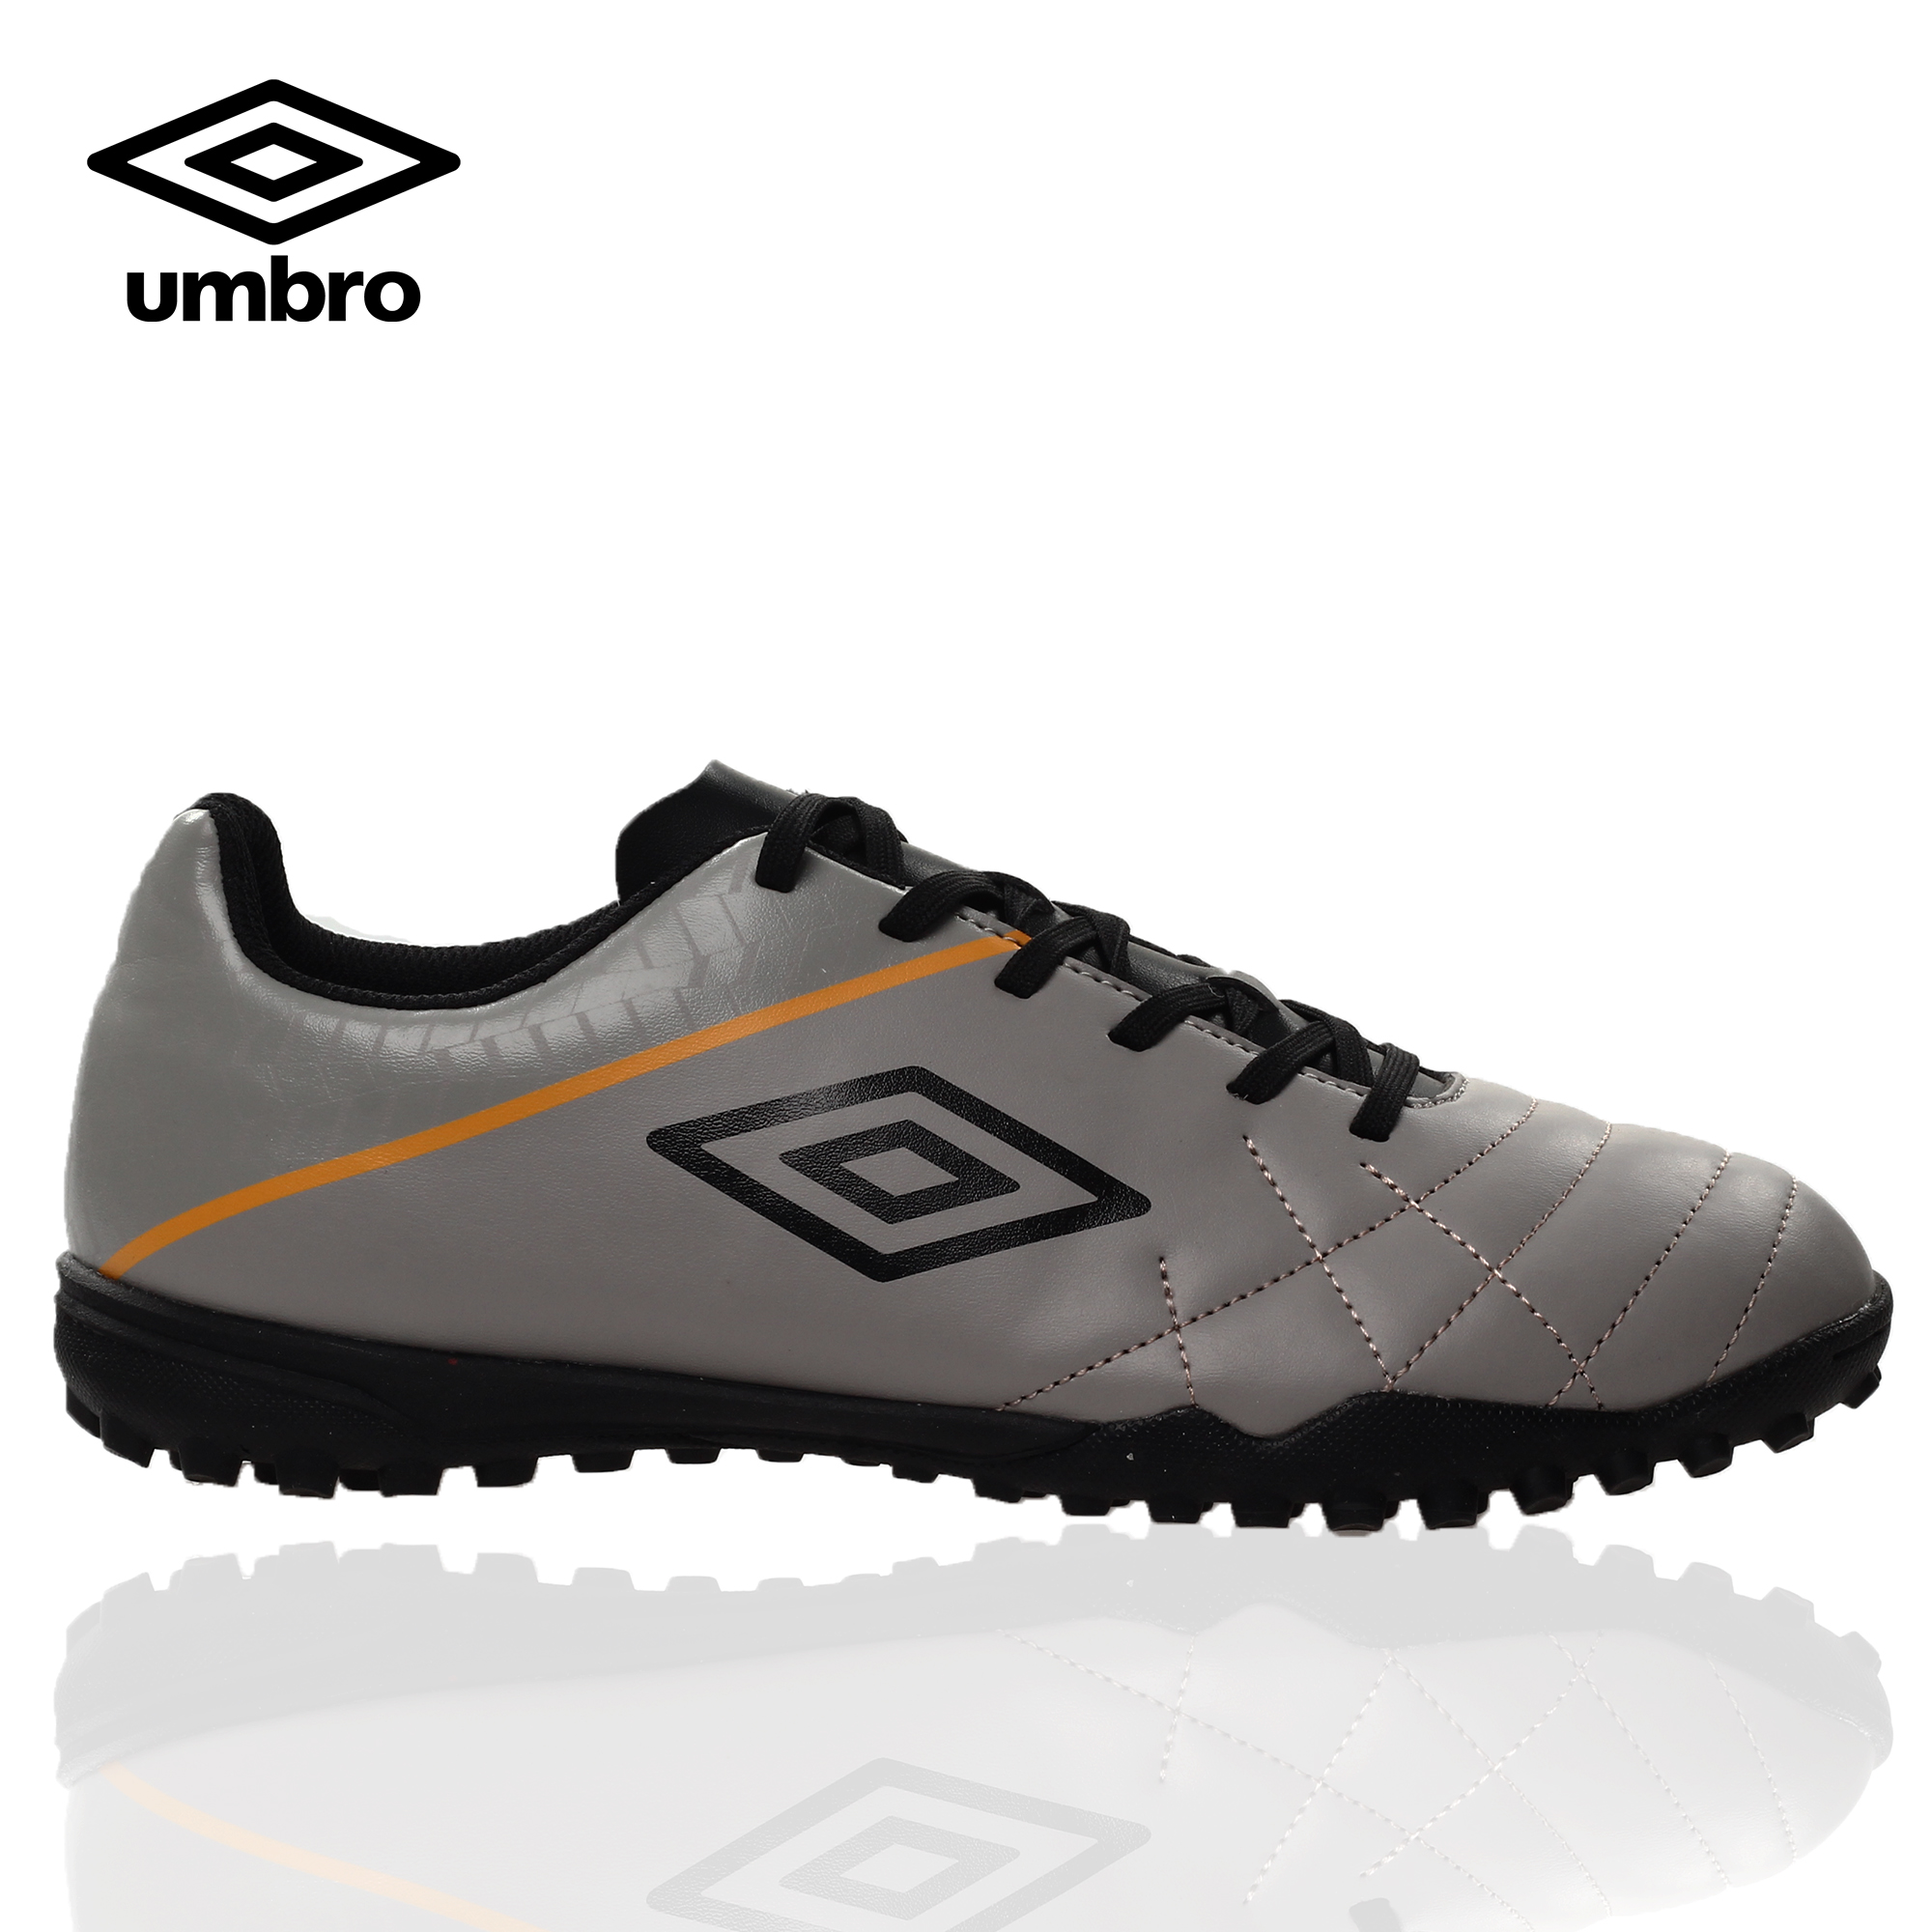 umbro futsal shoes